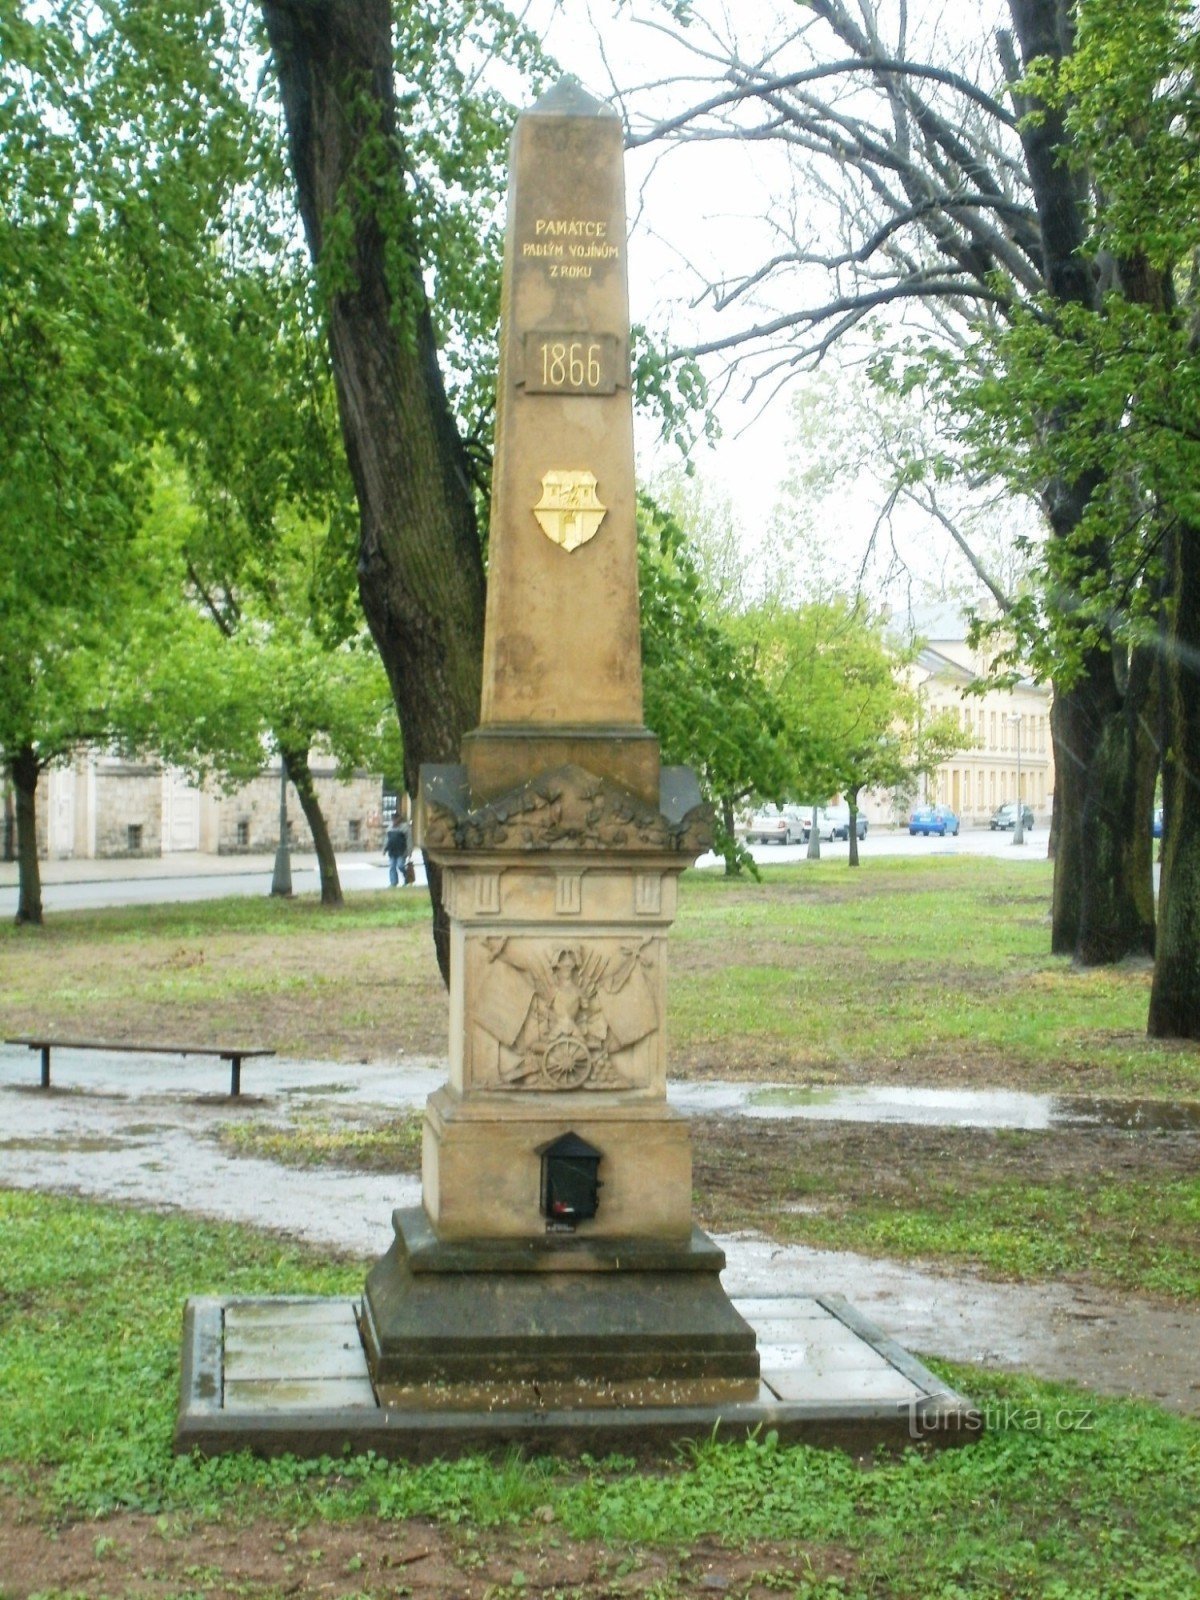 Dvůr Králové nad Labem - centrální pomník bitvy r. 1866